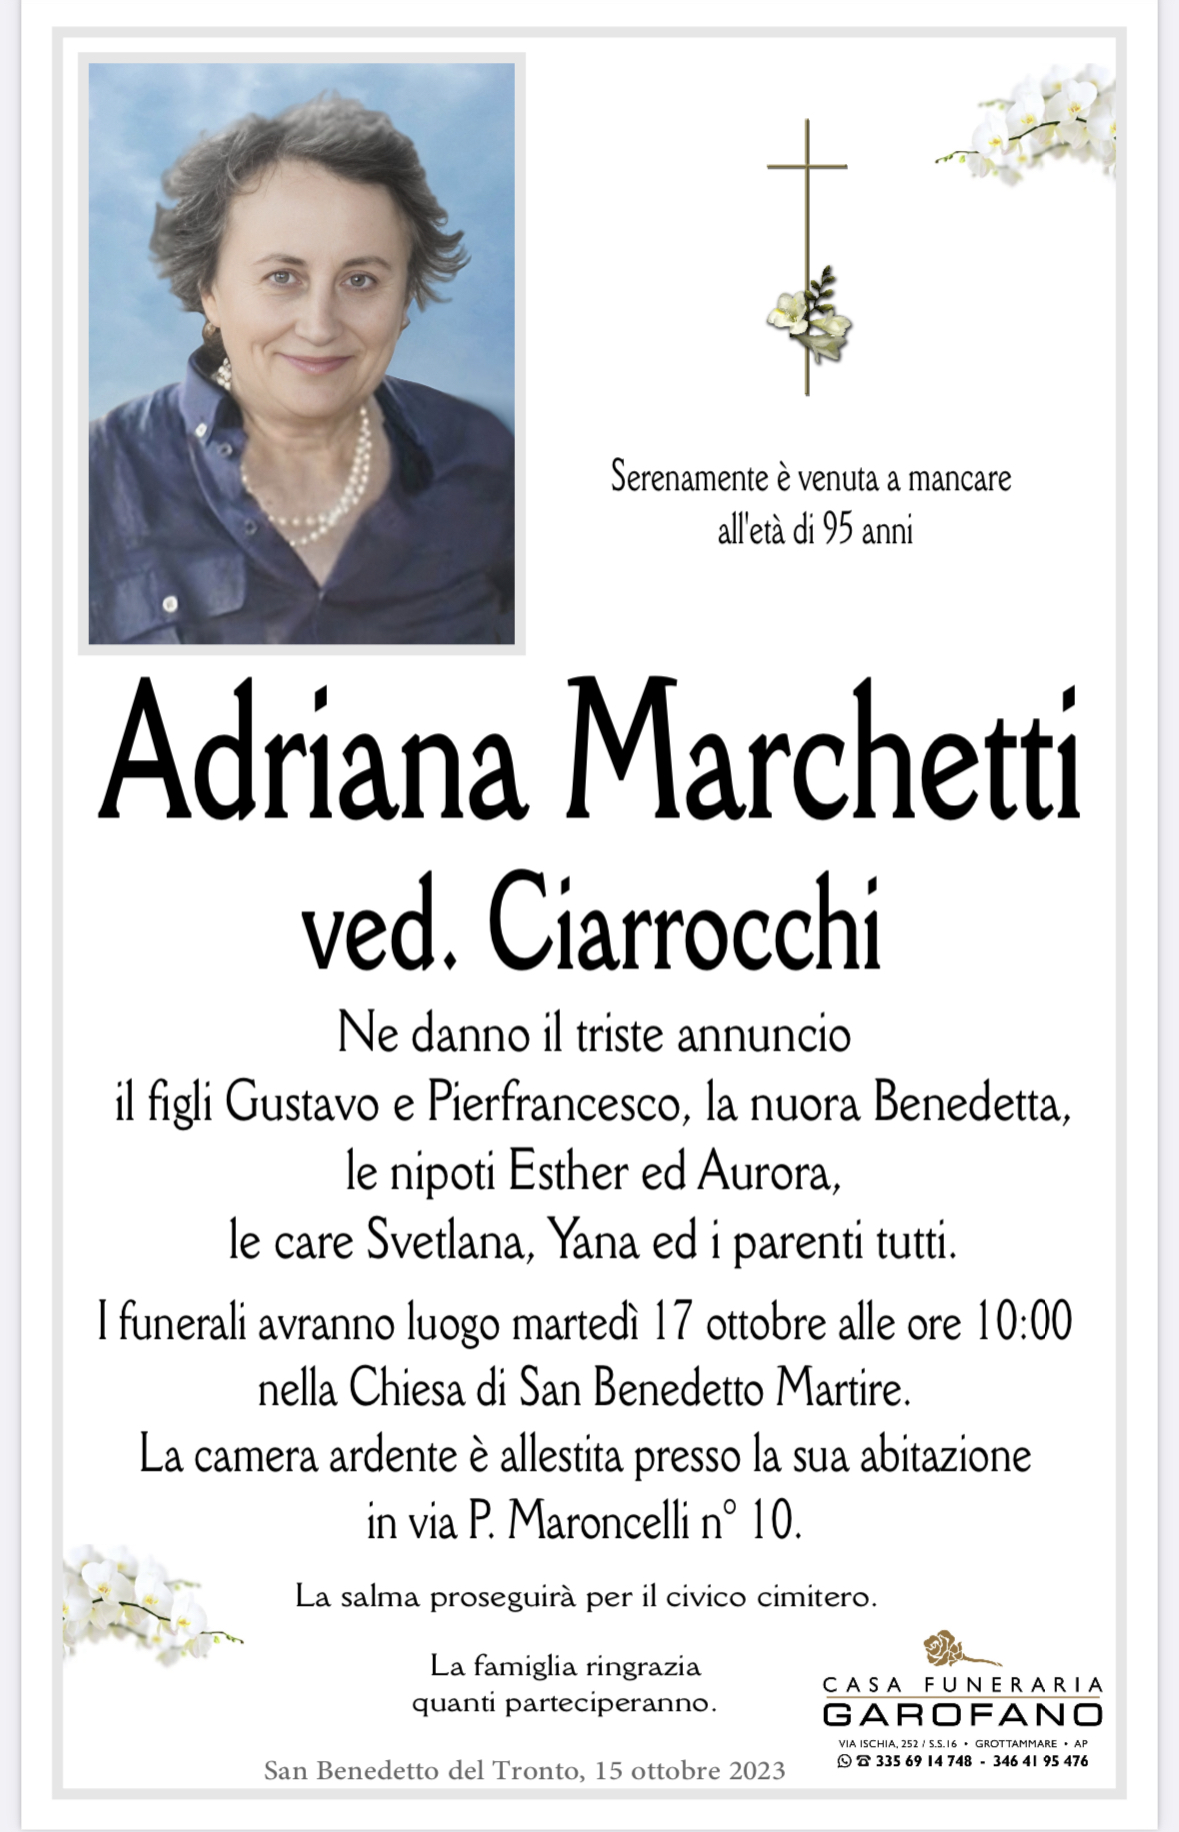 Adriana Marchetti